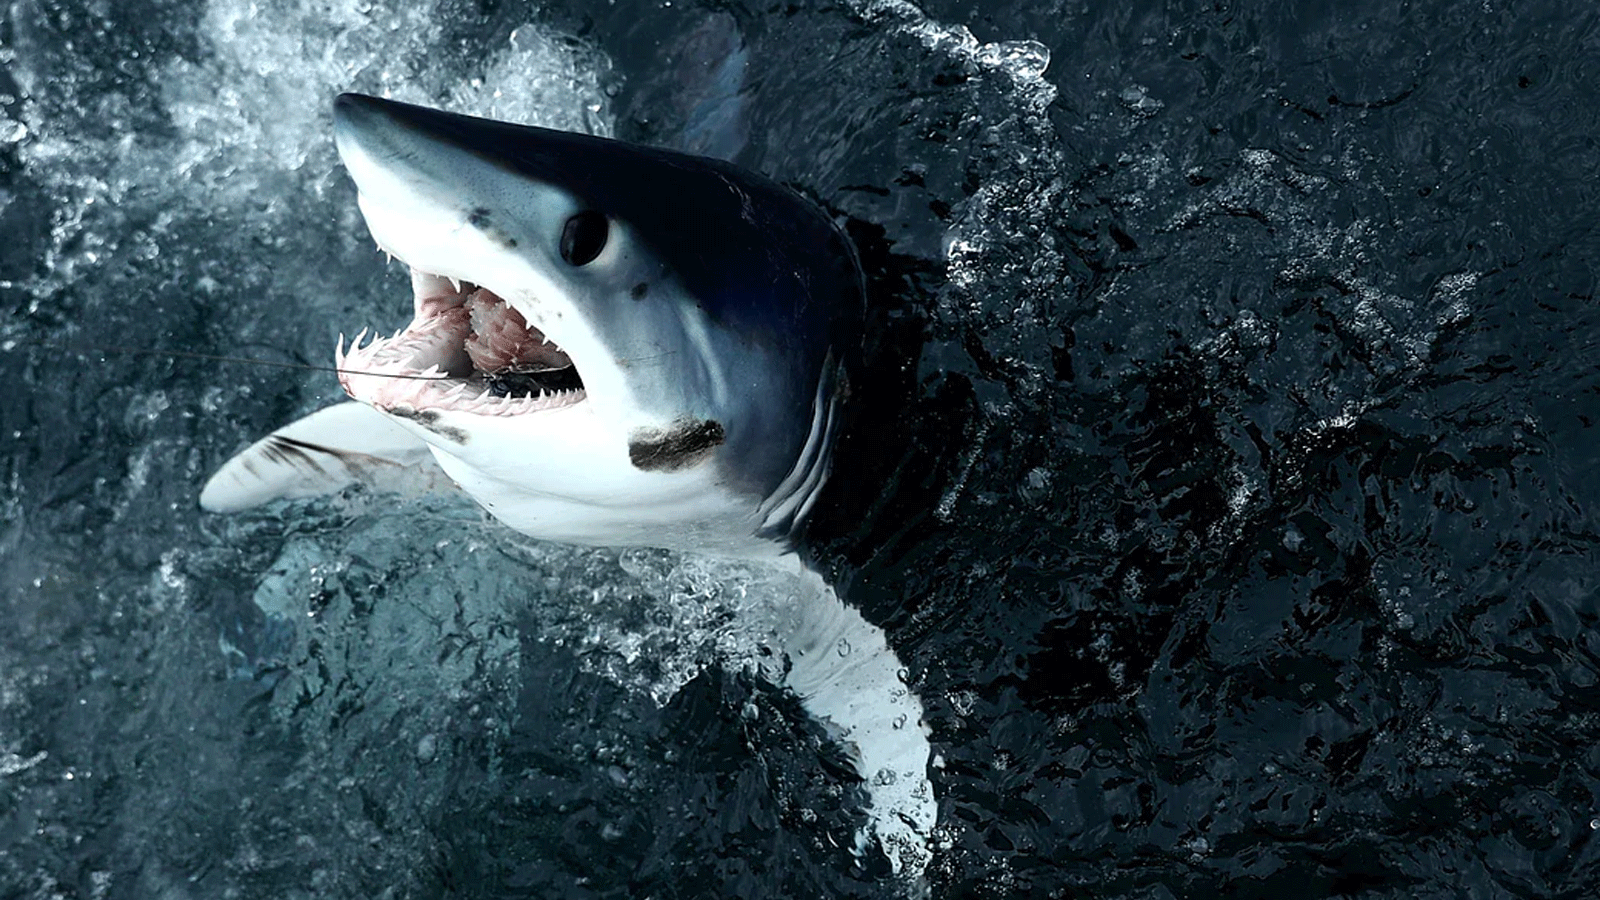  سمكة قرش ماكو قصيرة الزعانف تخرج من الماء بعد أن اصطادها إريك كيلي في كاليدا خلال بطولة شمال الأطلسي مونستر القرش الحادي والثلاثين في نيو بيدفورد ، ماساتشوستس. 15 تموز\يوليو 2017